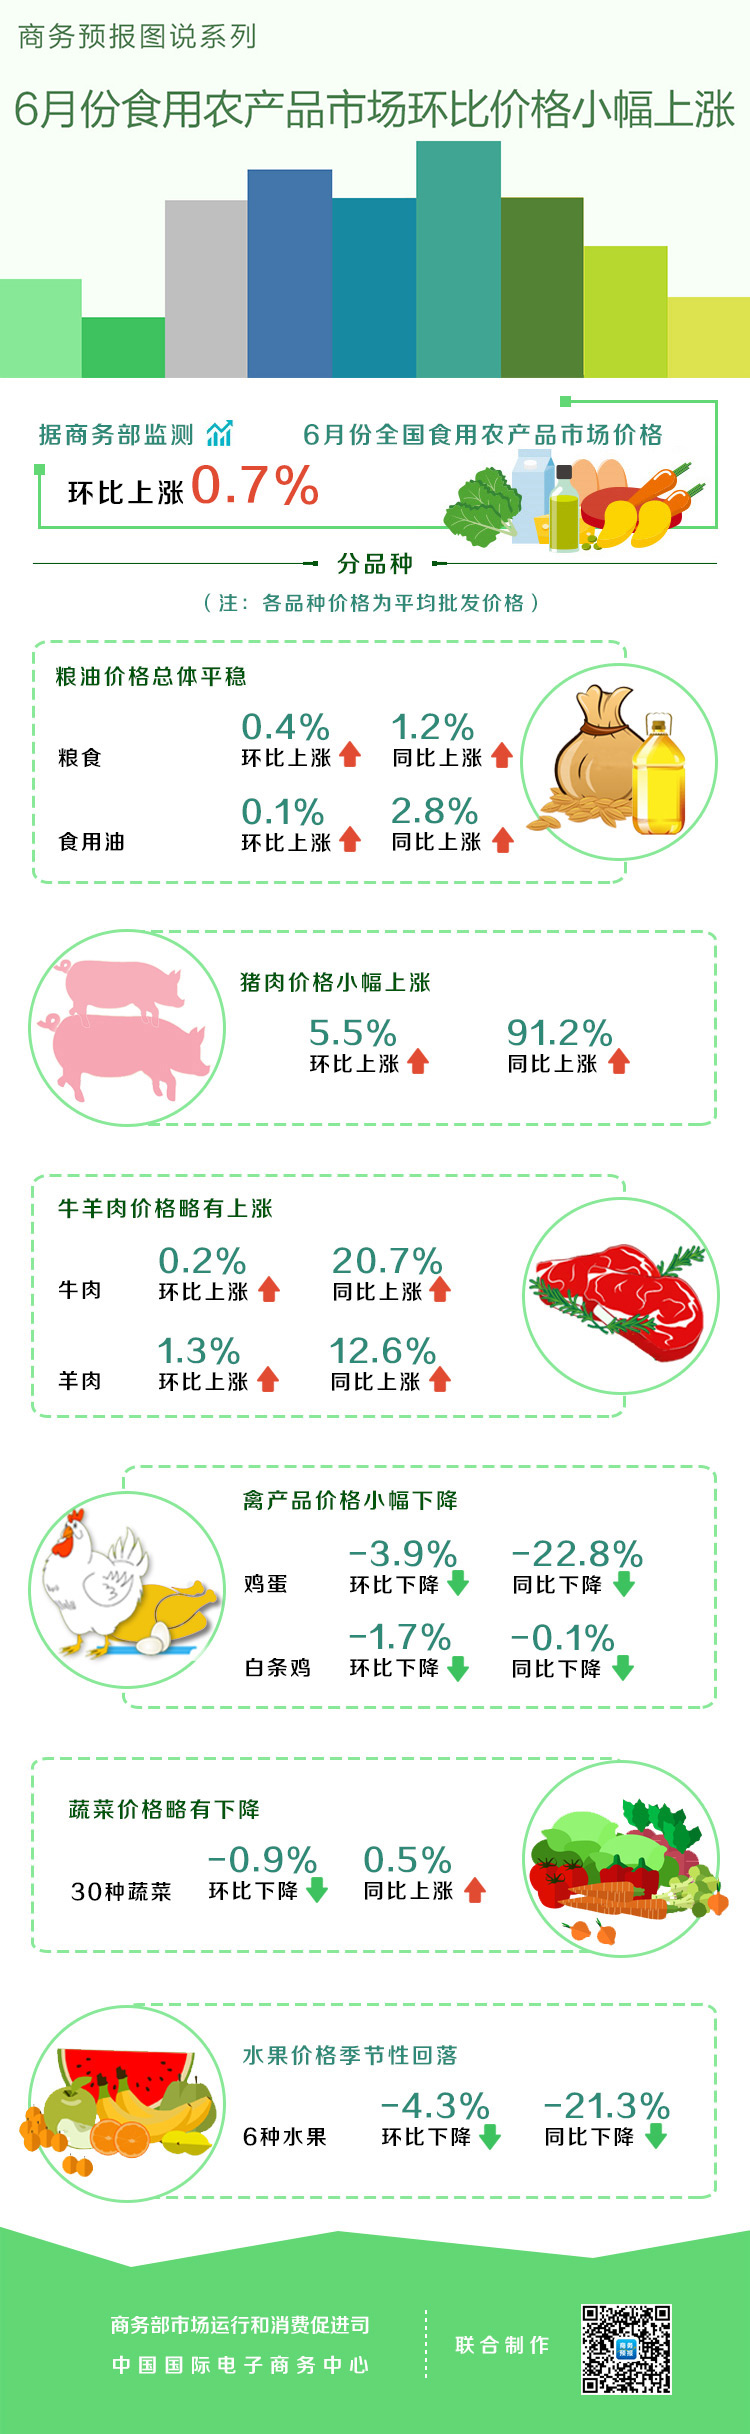 6月份食用农产品市场环比价格小幅上涨 猪肉上涨5.5%